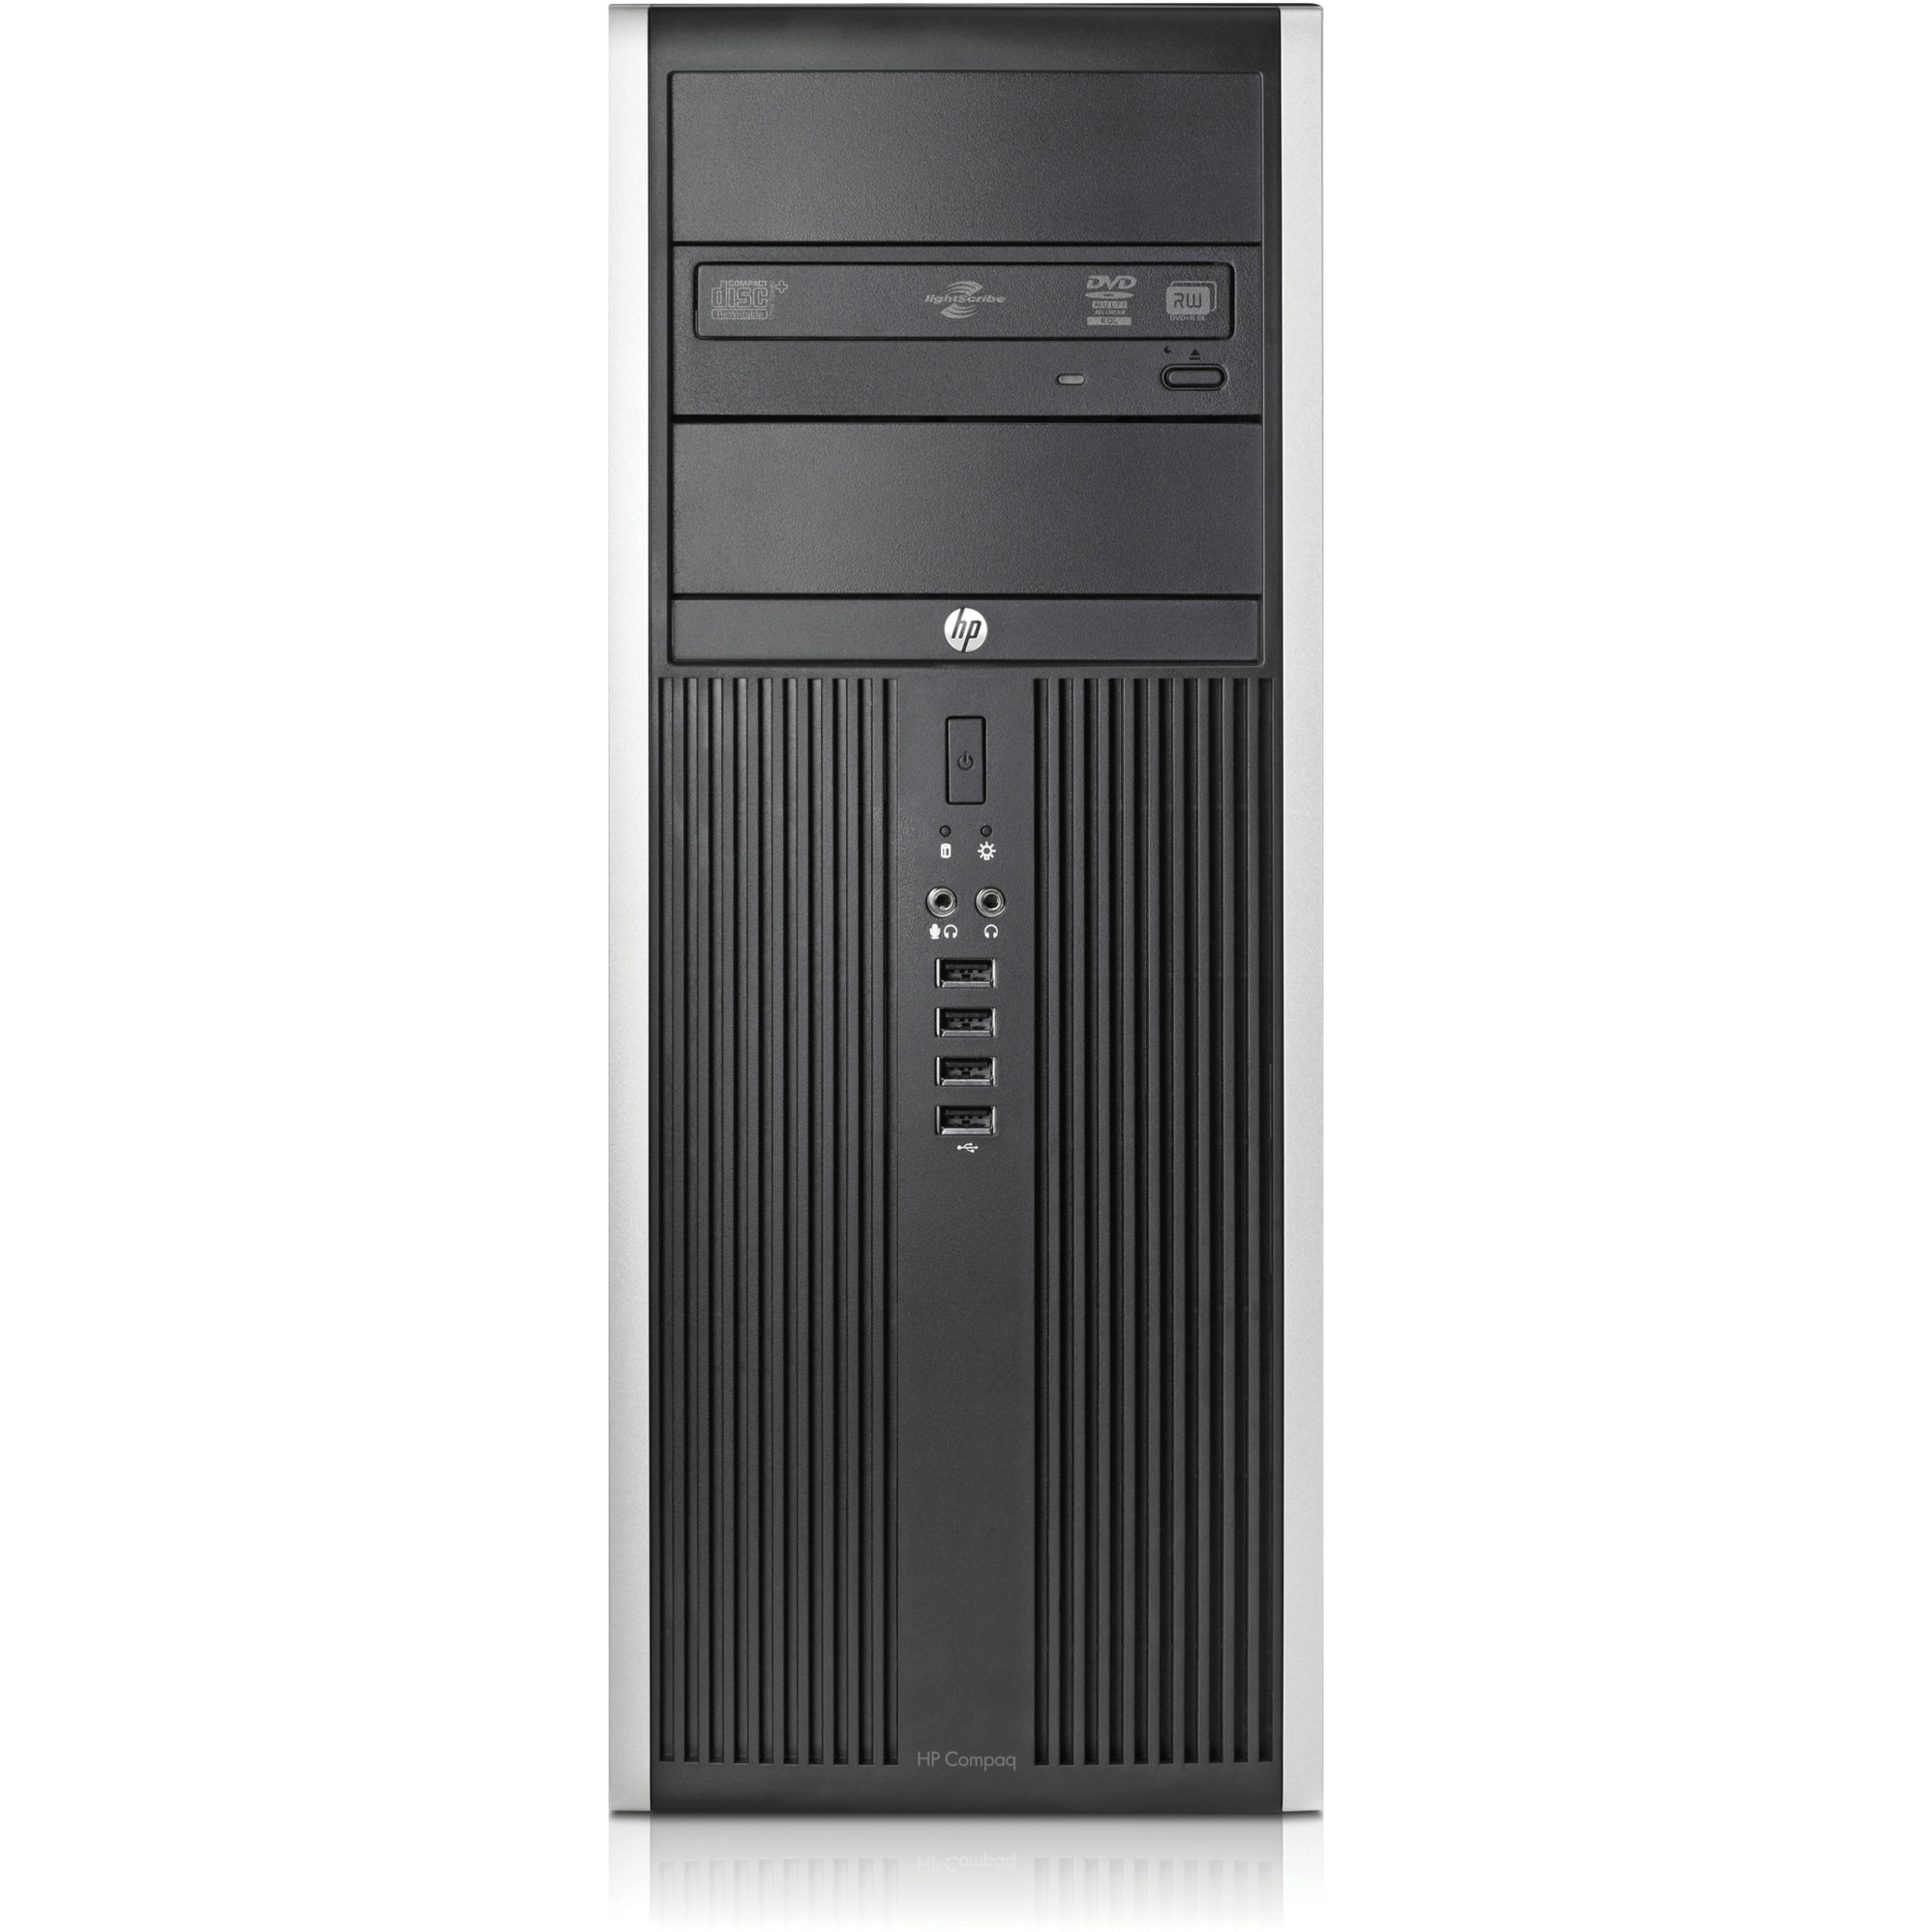 gebonden Kan weerstaan eigenaar HP Business Desktop Computer, Intel Core i7 i7-3770, 4GB RAM, 500GB HD, DVD  Writer, Windows 7 Professional - Walmart.com